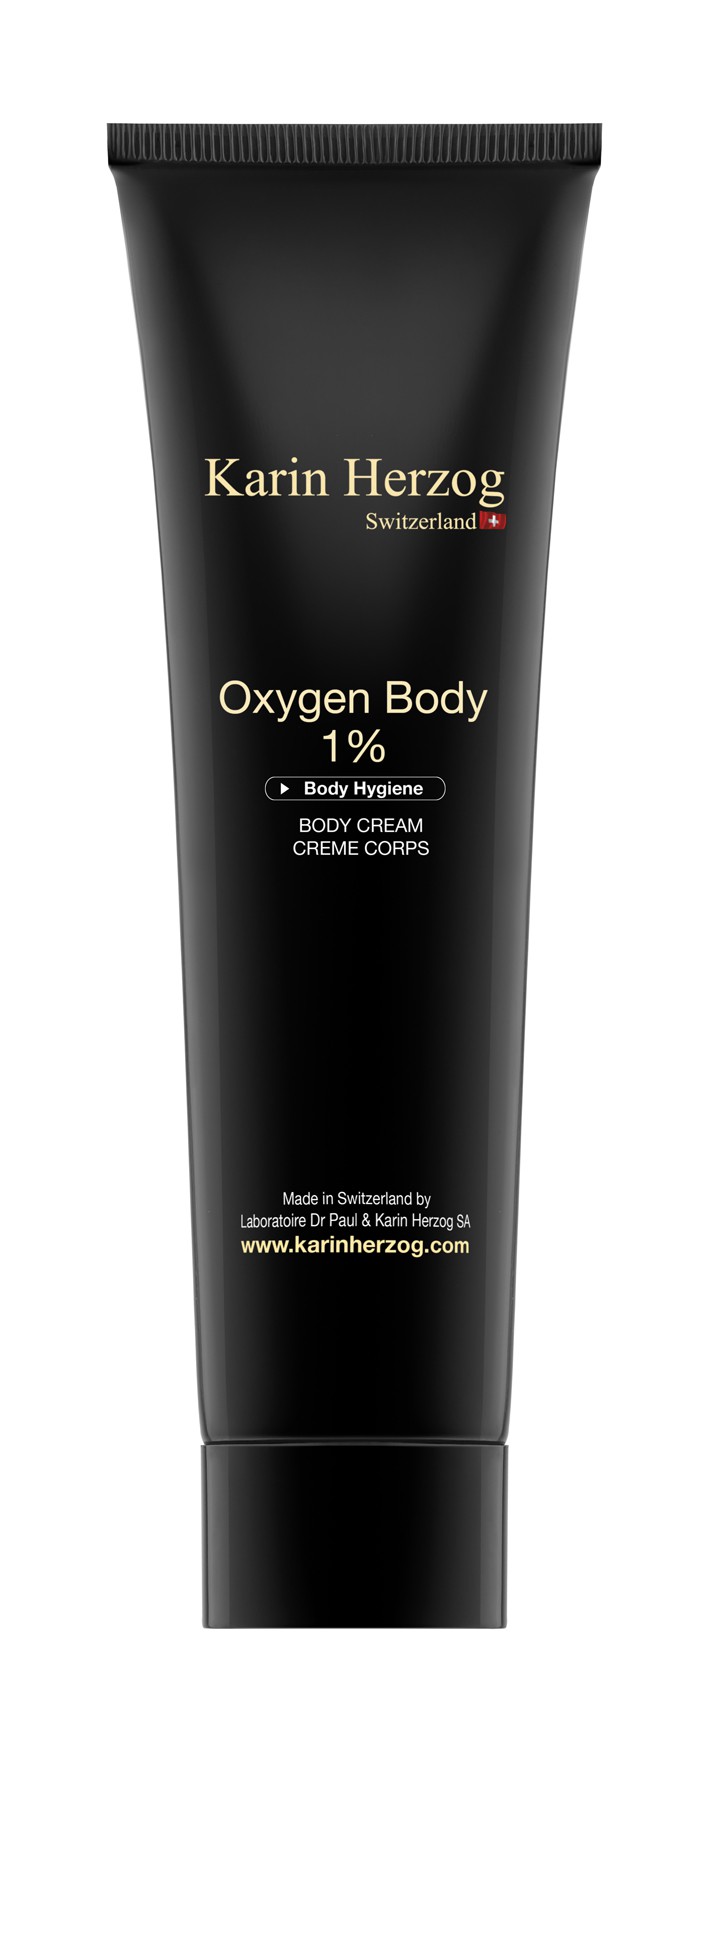 Oxygen Body by Karin Herzog